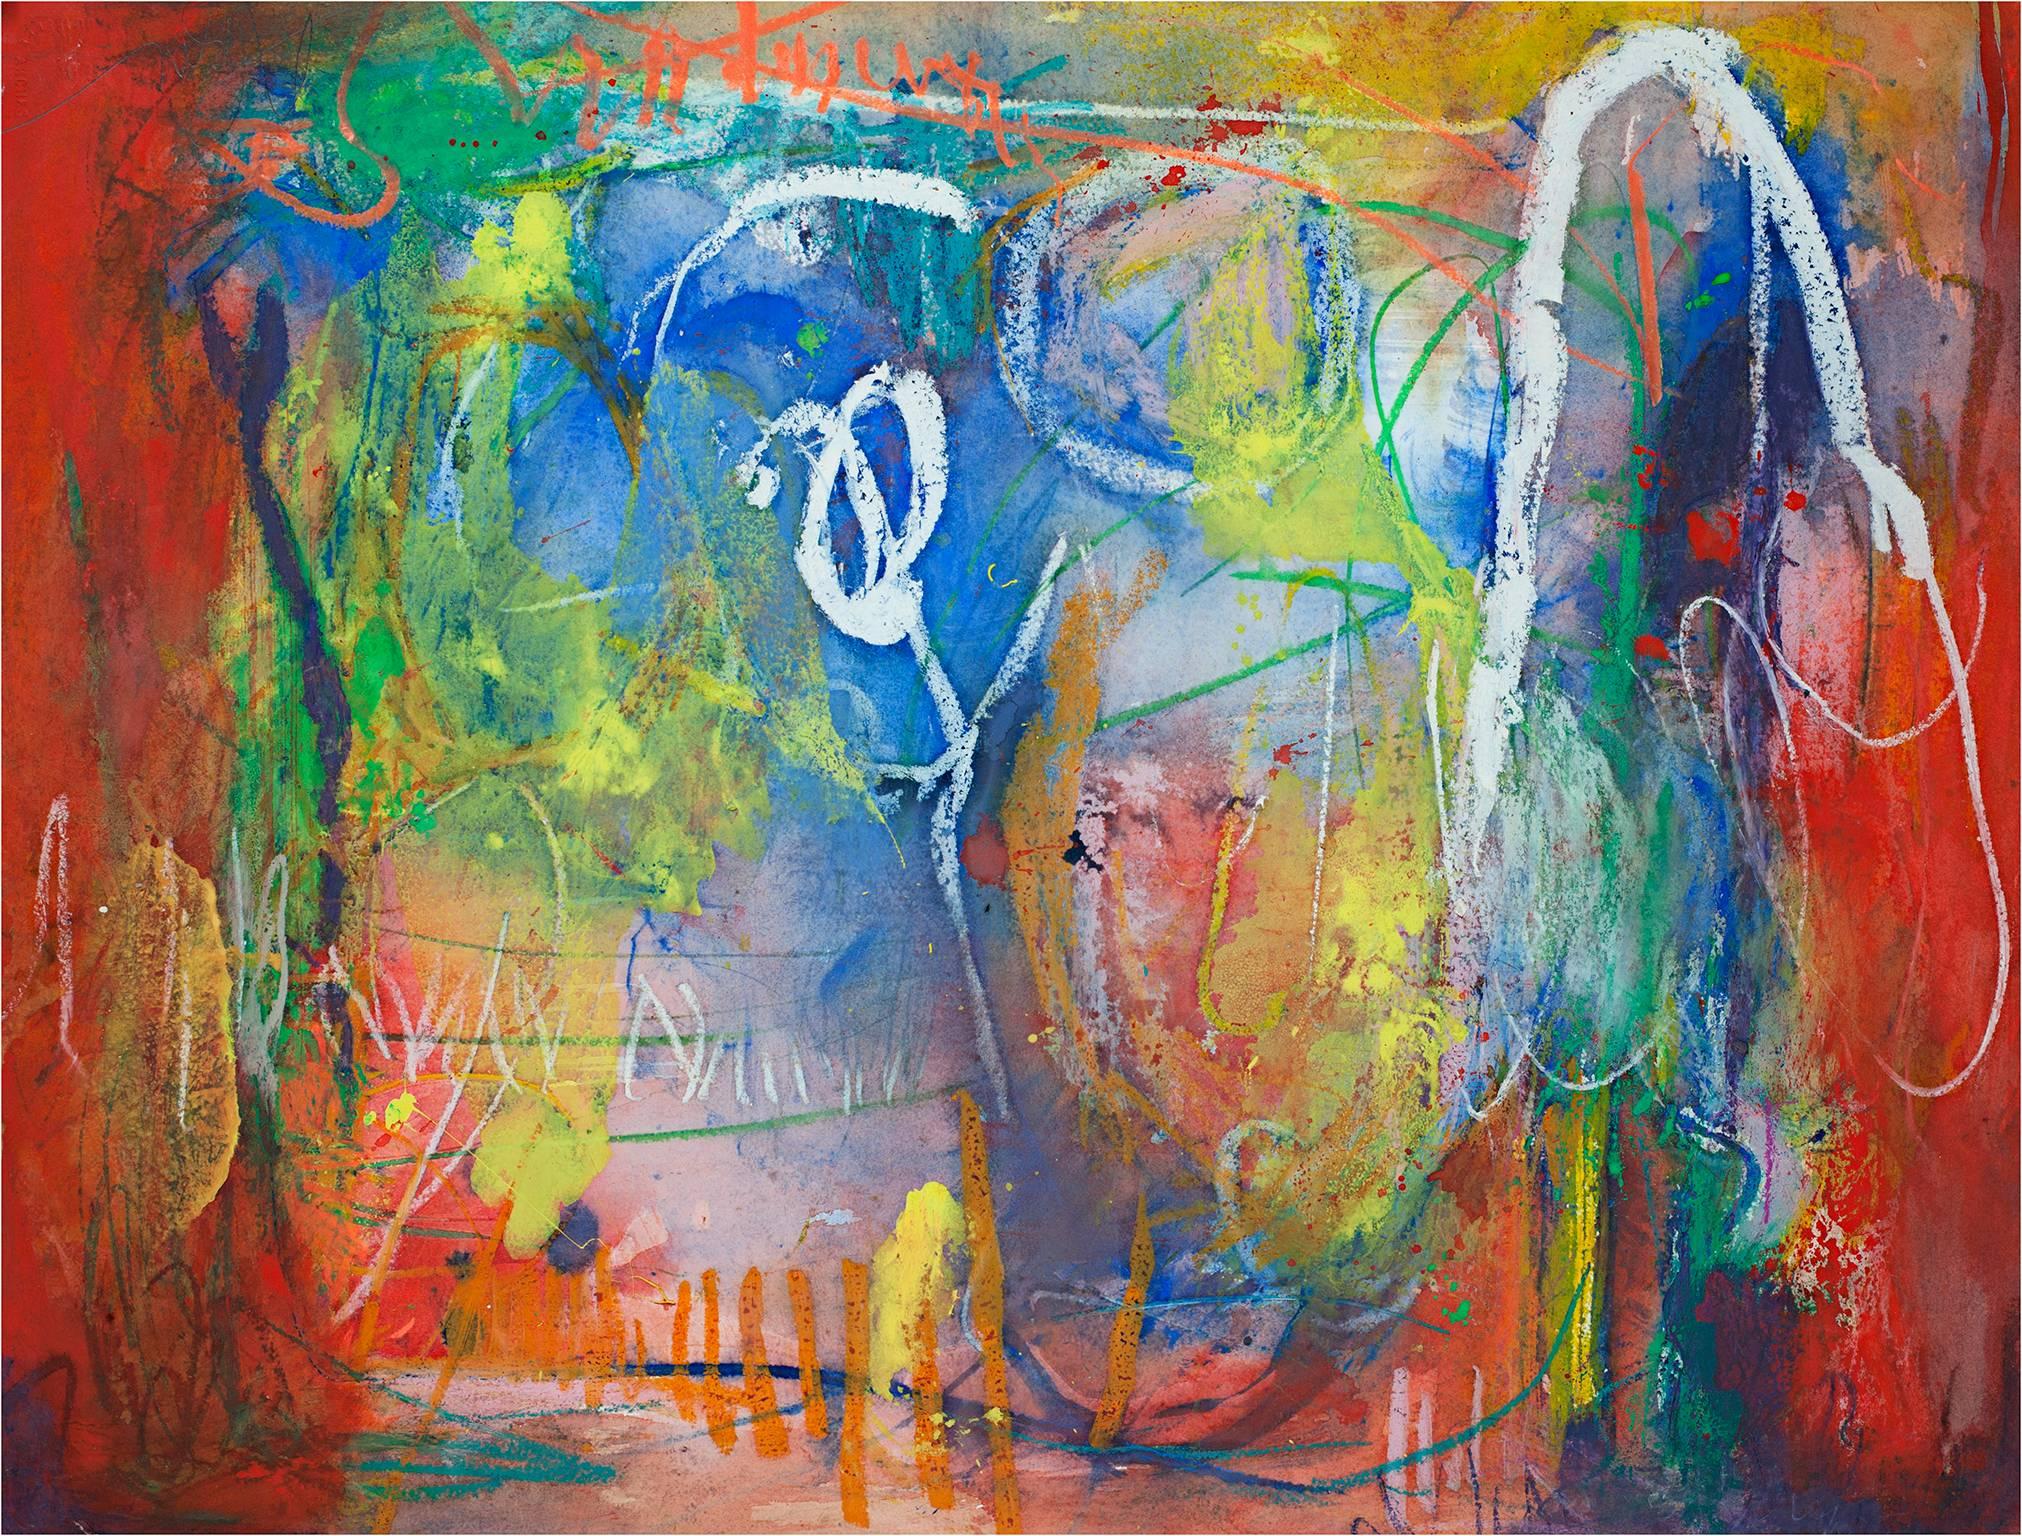 "Heart Stop Happy II" est une œuvre originale en techniques mixtes sur papier aquarelle. Alayna Rose, l'artiste, a signé l'œuvre en bas à droite. Cette pièce présente des marques abstraites en blanc sur diverses marques de couleurs variées. 

22